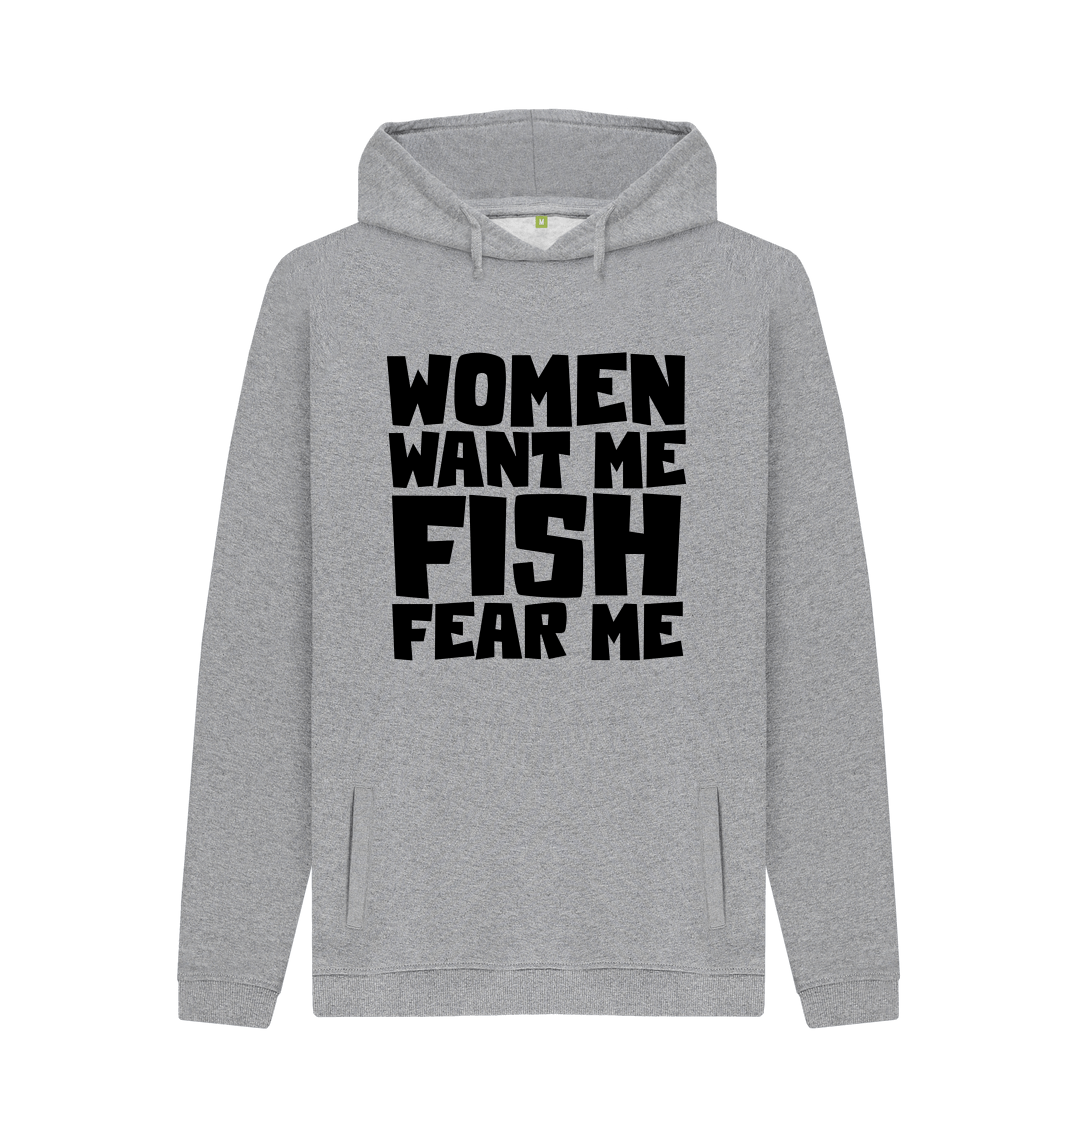 Fishing Funny Women Want Me Fish Fear Me Sweatshirt 